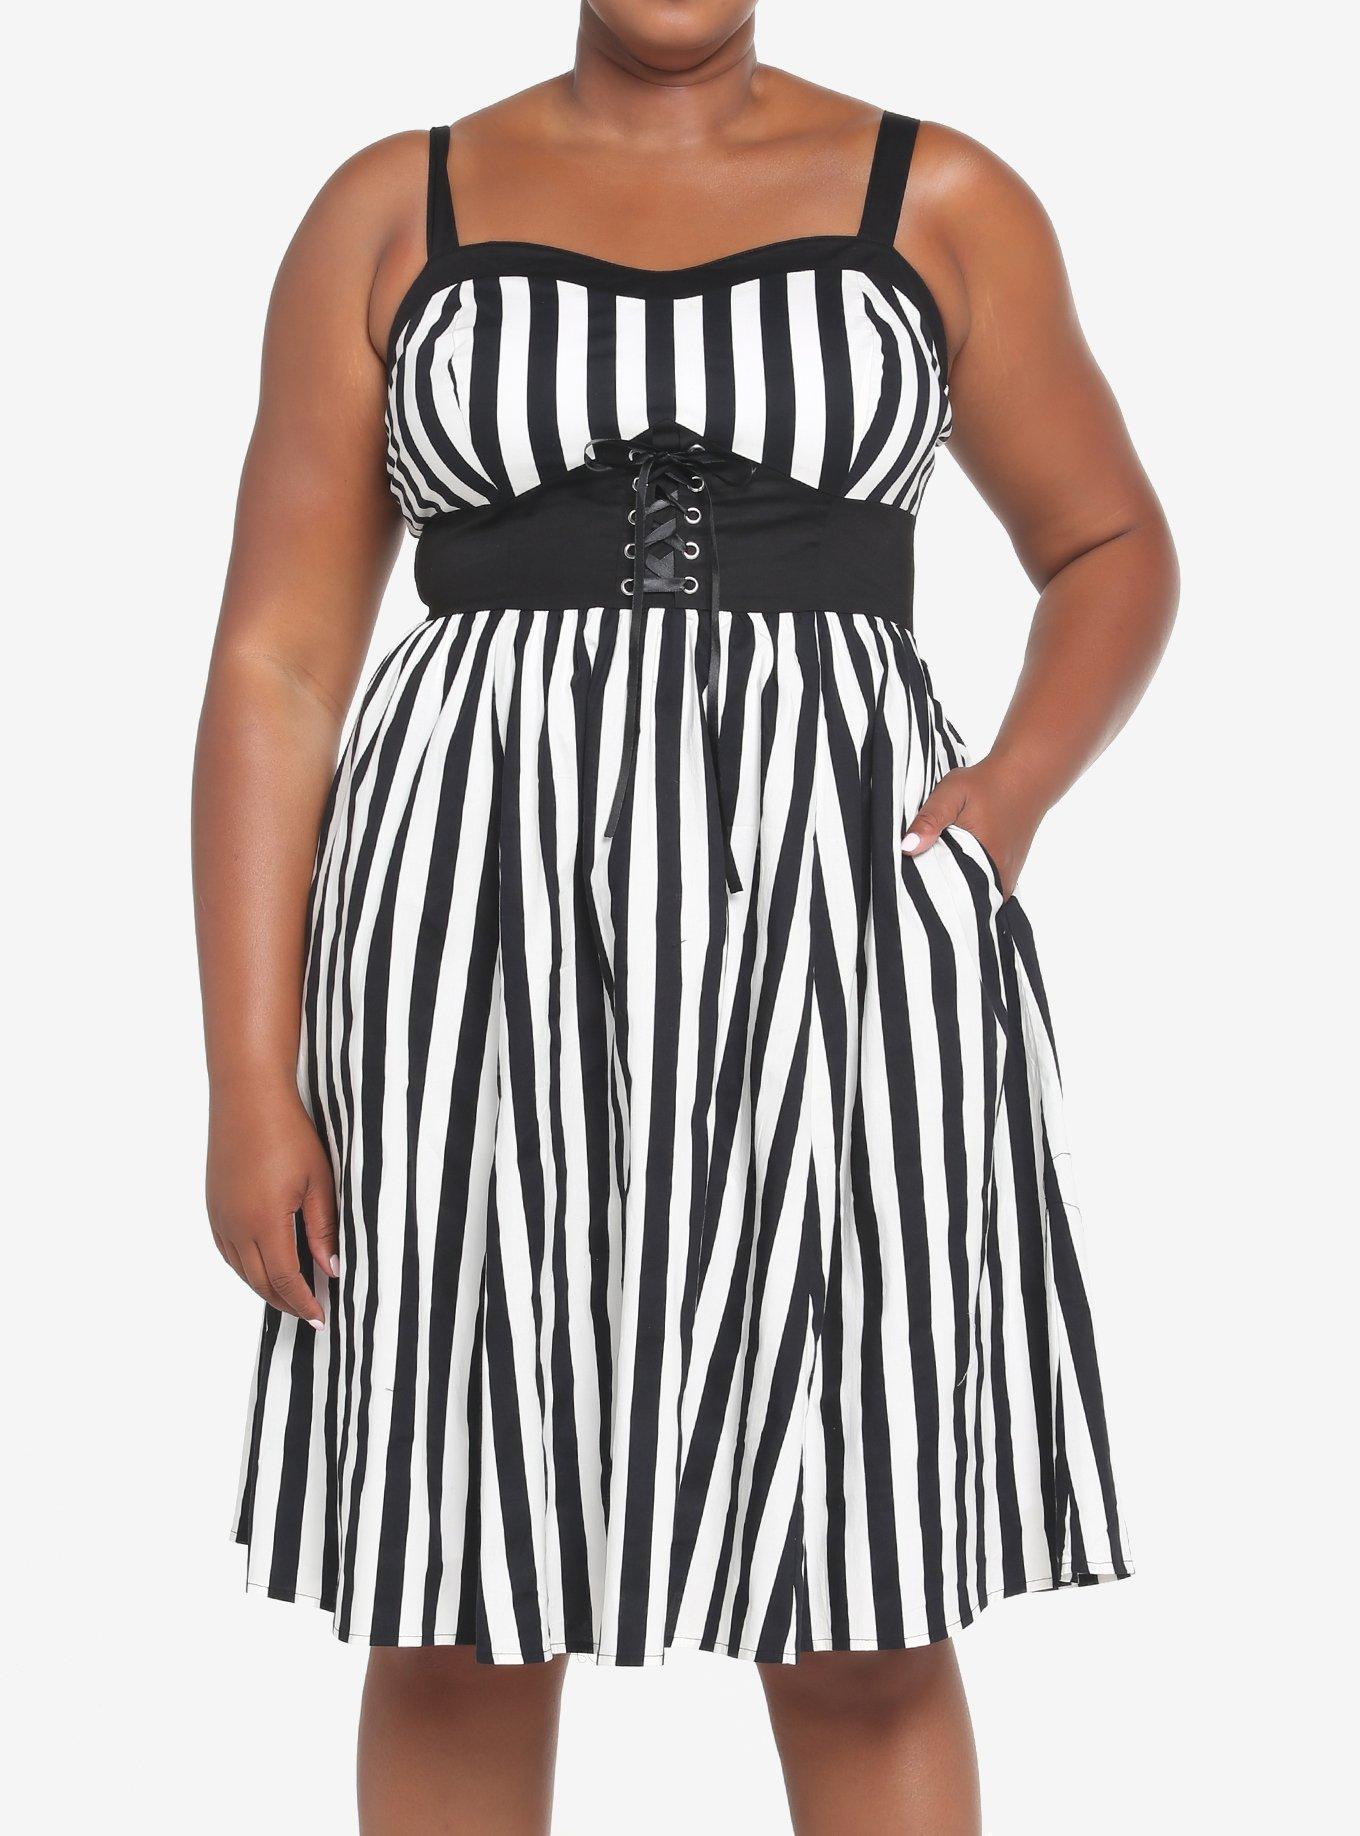 Black & White Stripe Corset Dress Plus Size